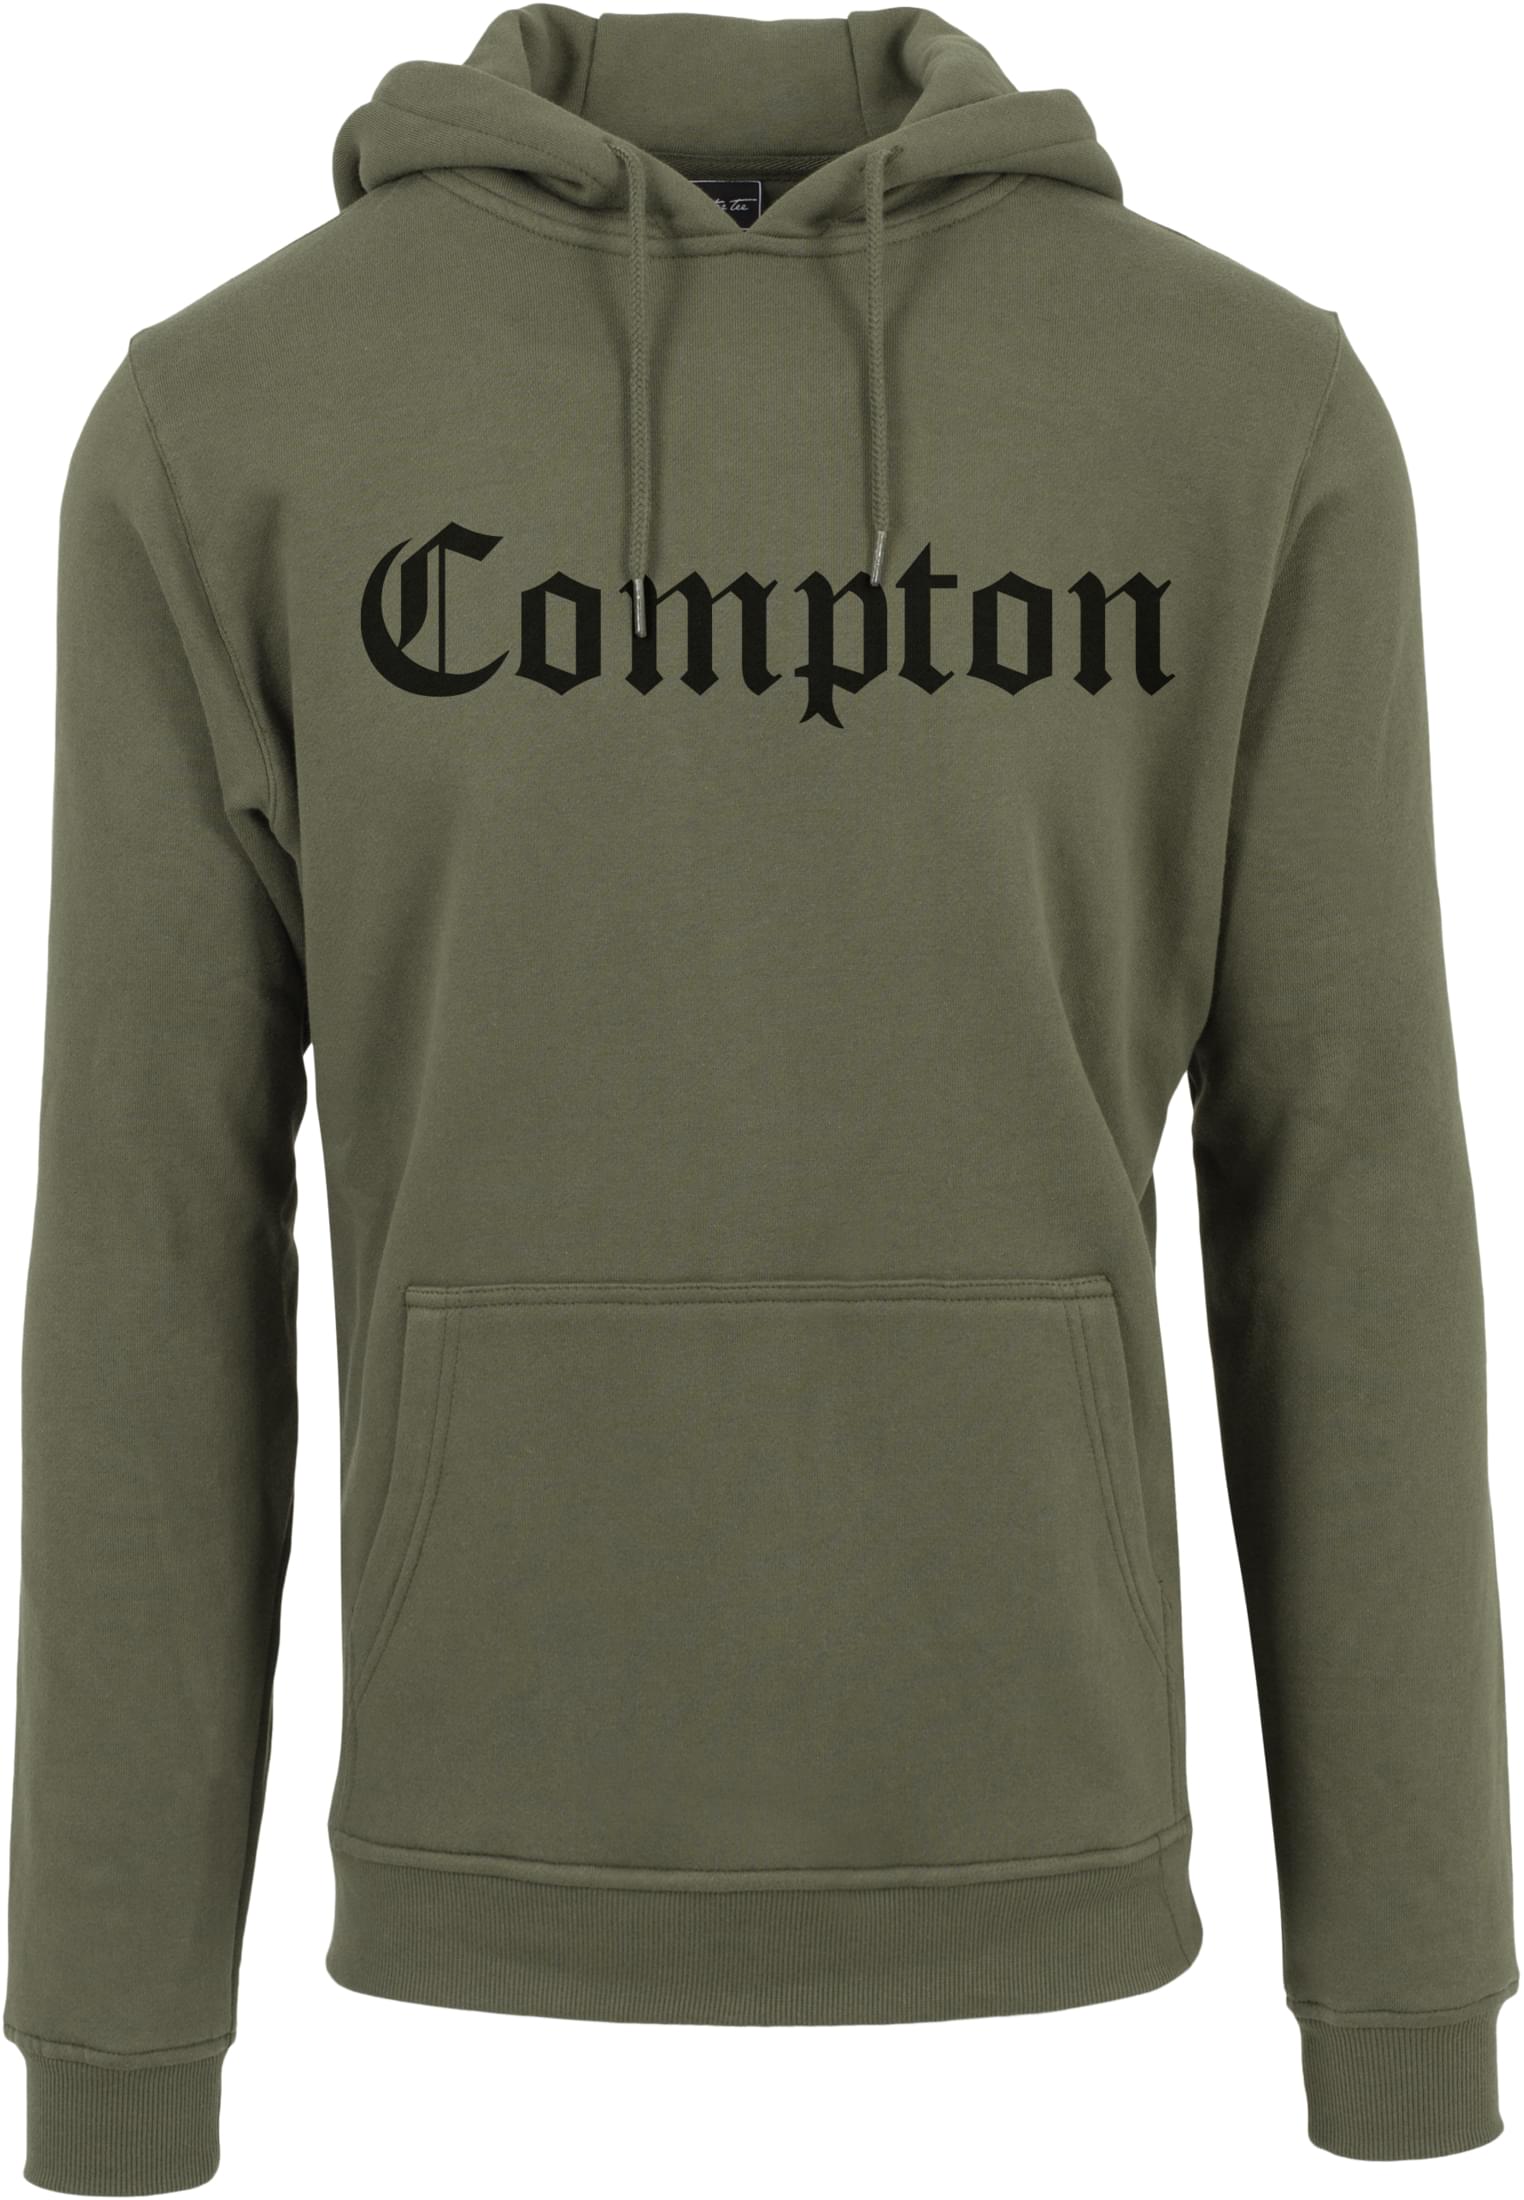 Mr.Tee Compton Hoody